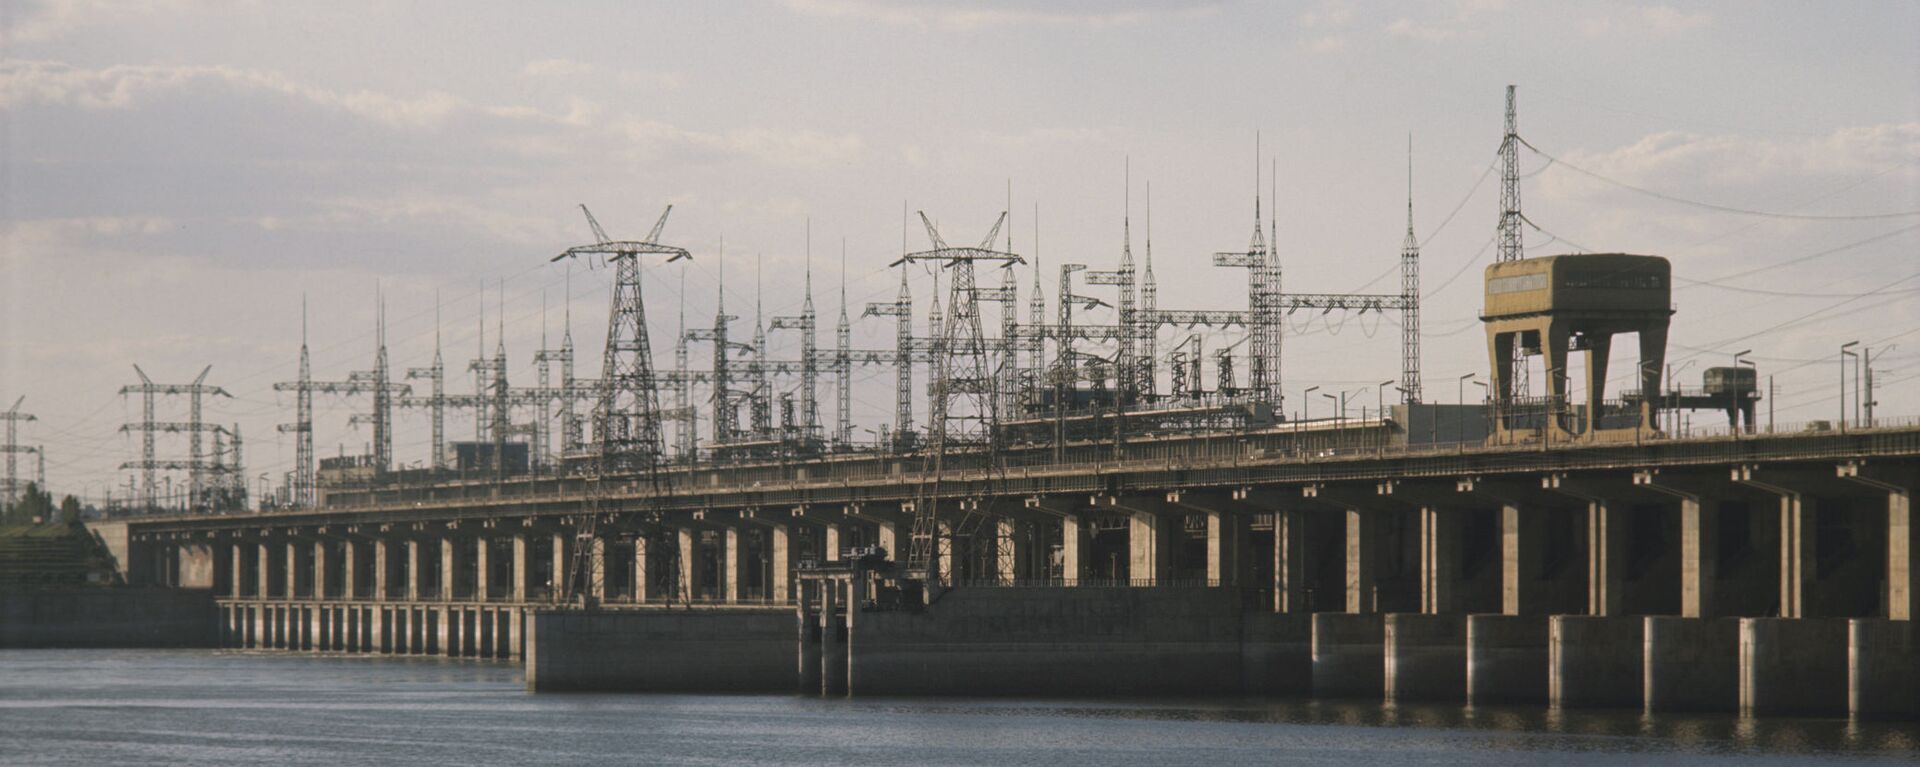 Волжская ГЭС - Sputnik Таджикистан, 1920, 31.05.2021